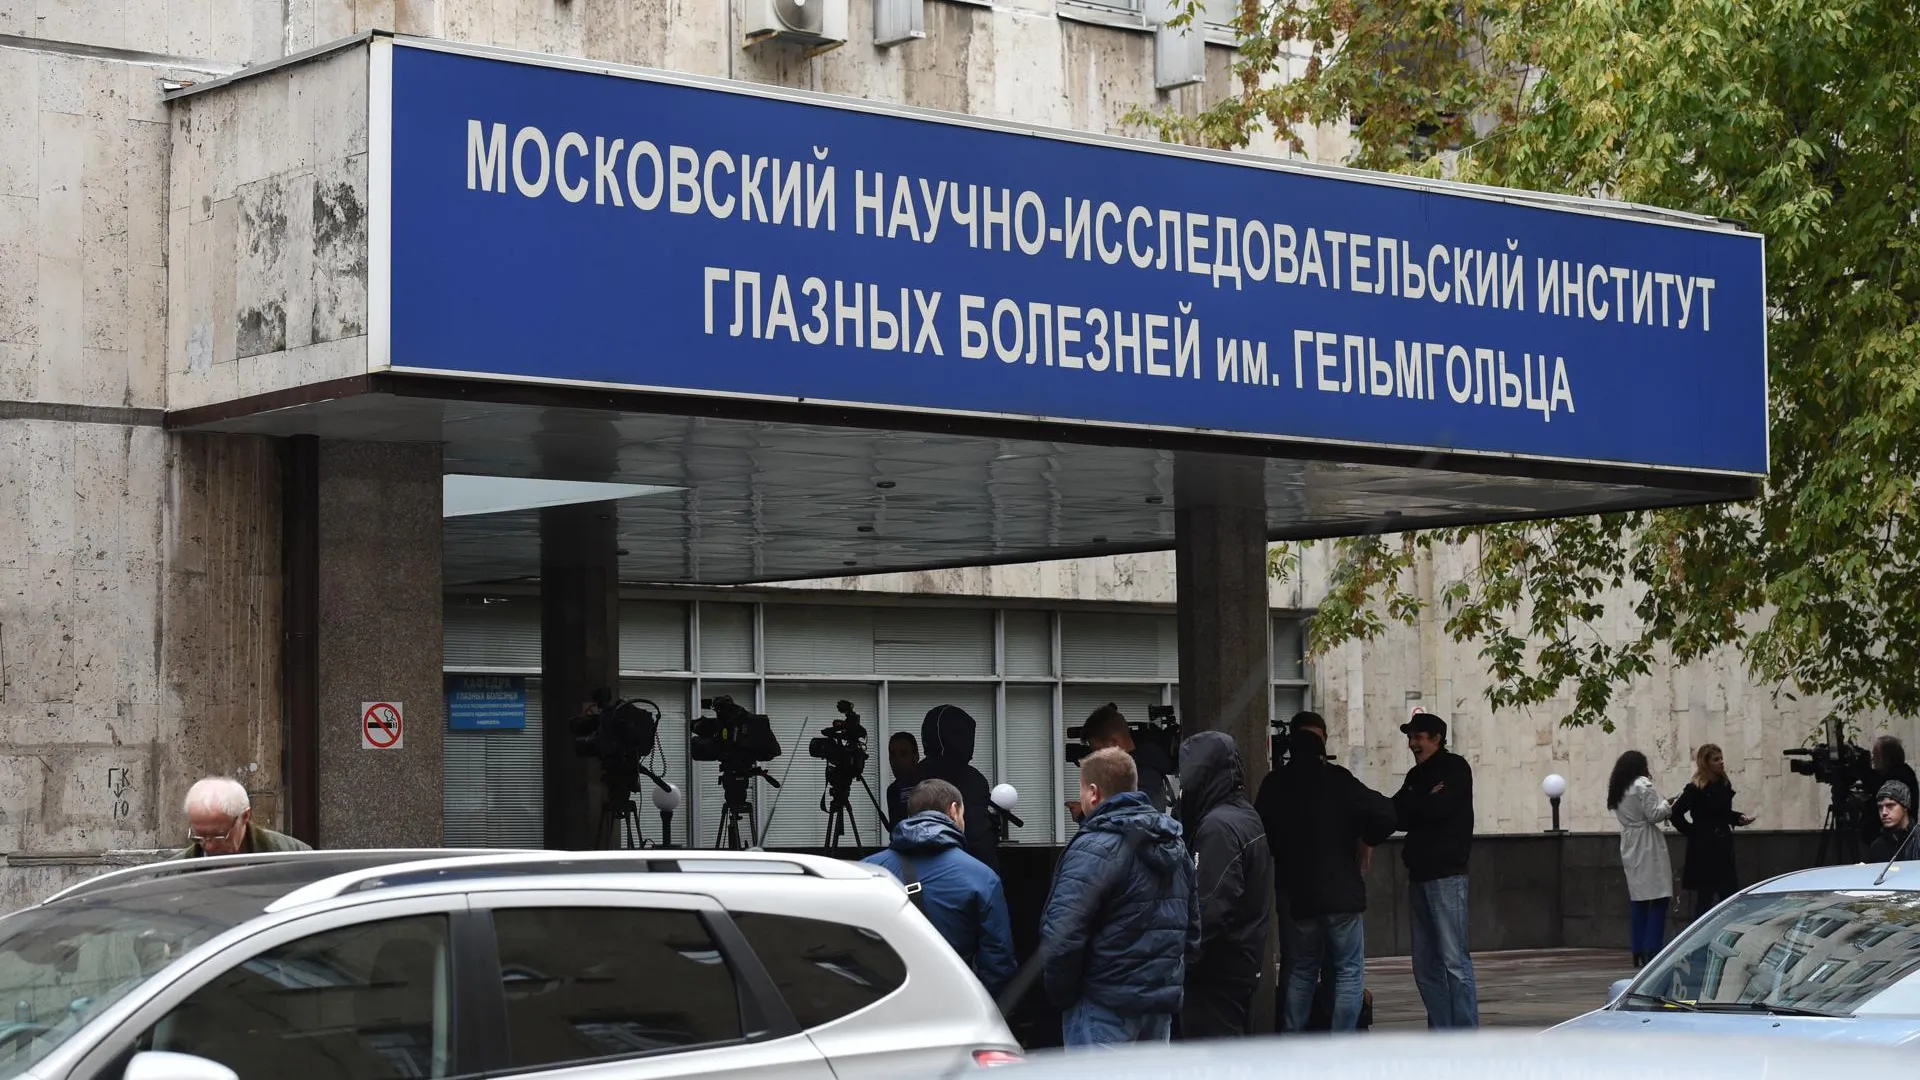 СК Москвы возбудил дело после проверки НИИ, где пациенты ослепли после укола препарата